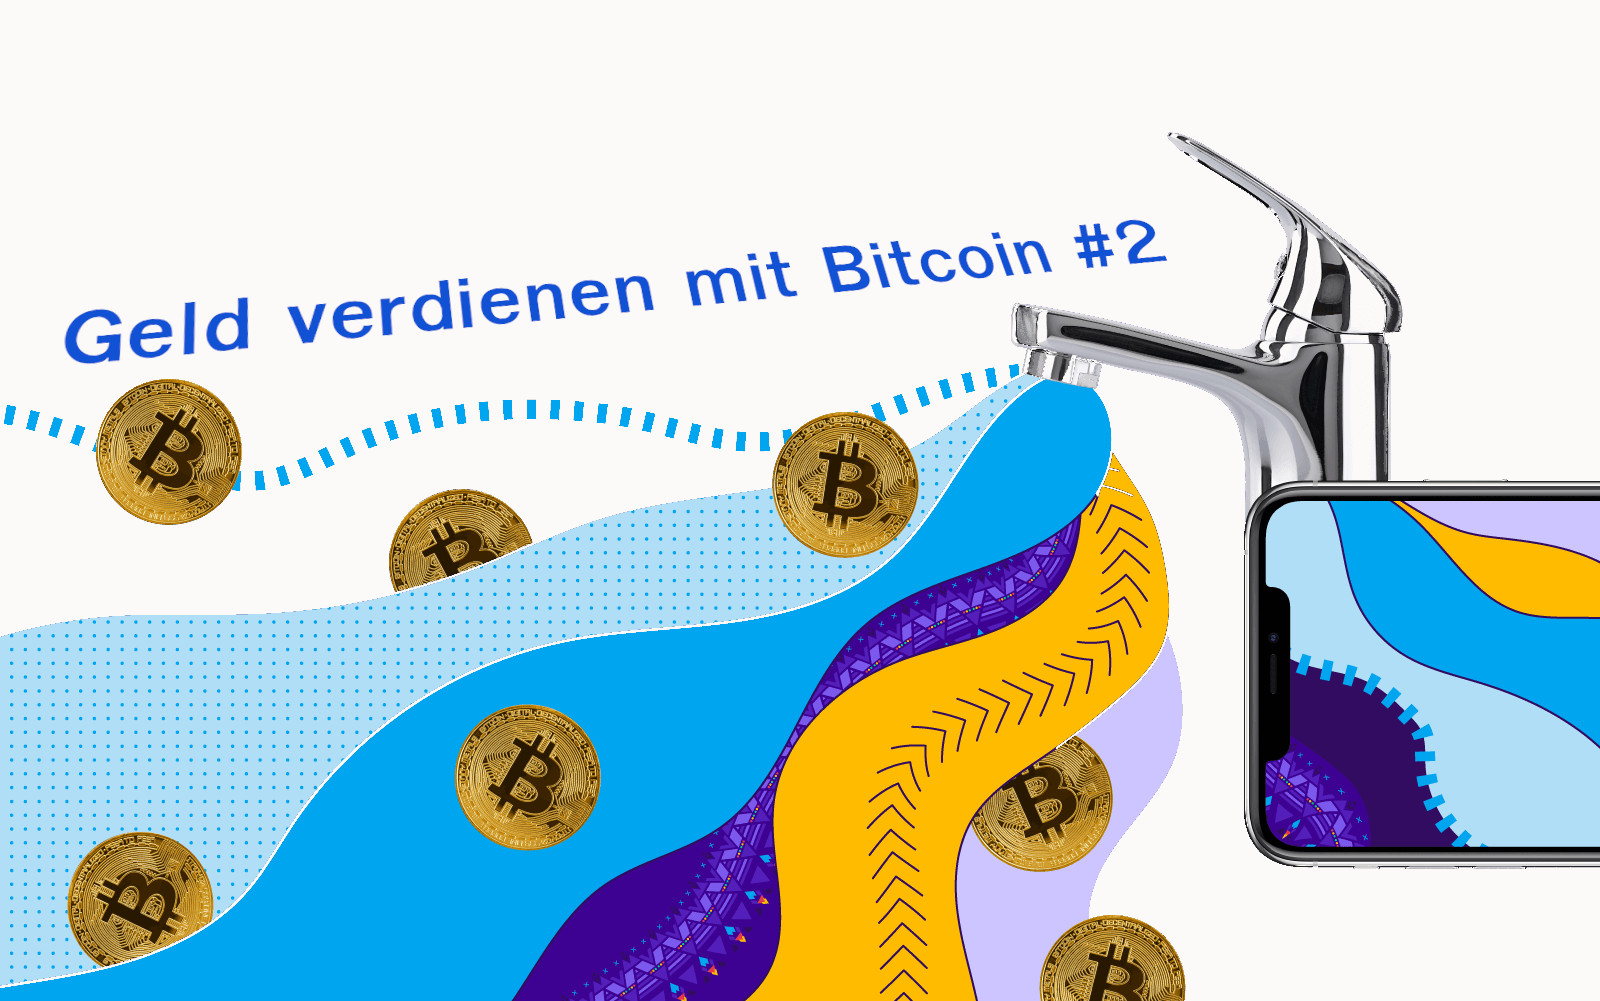 Geld verdienen mit Bitcoin #2: DeFi-Anwendungen